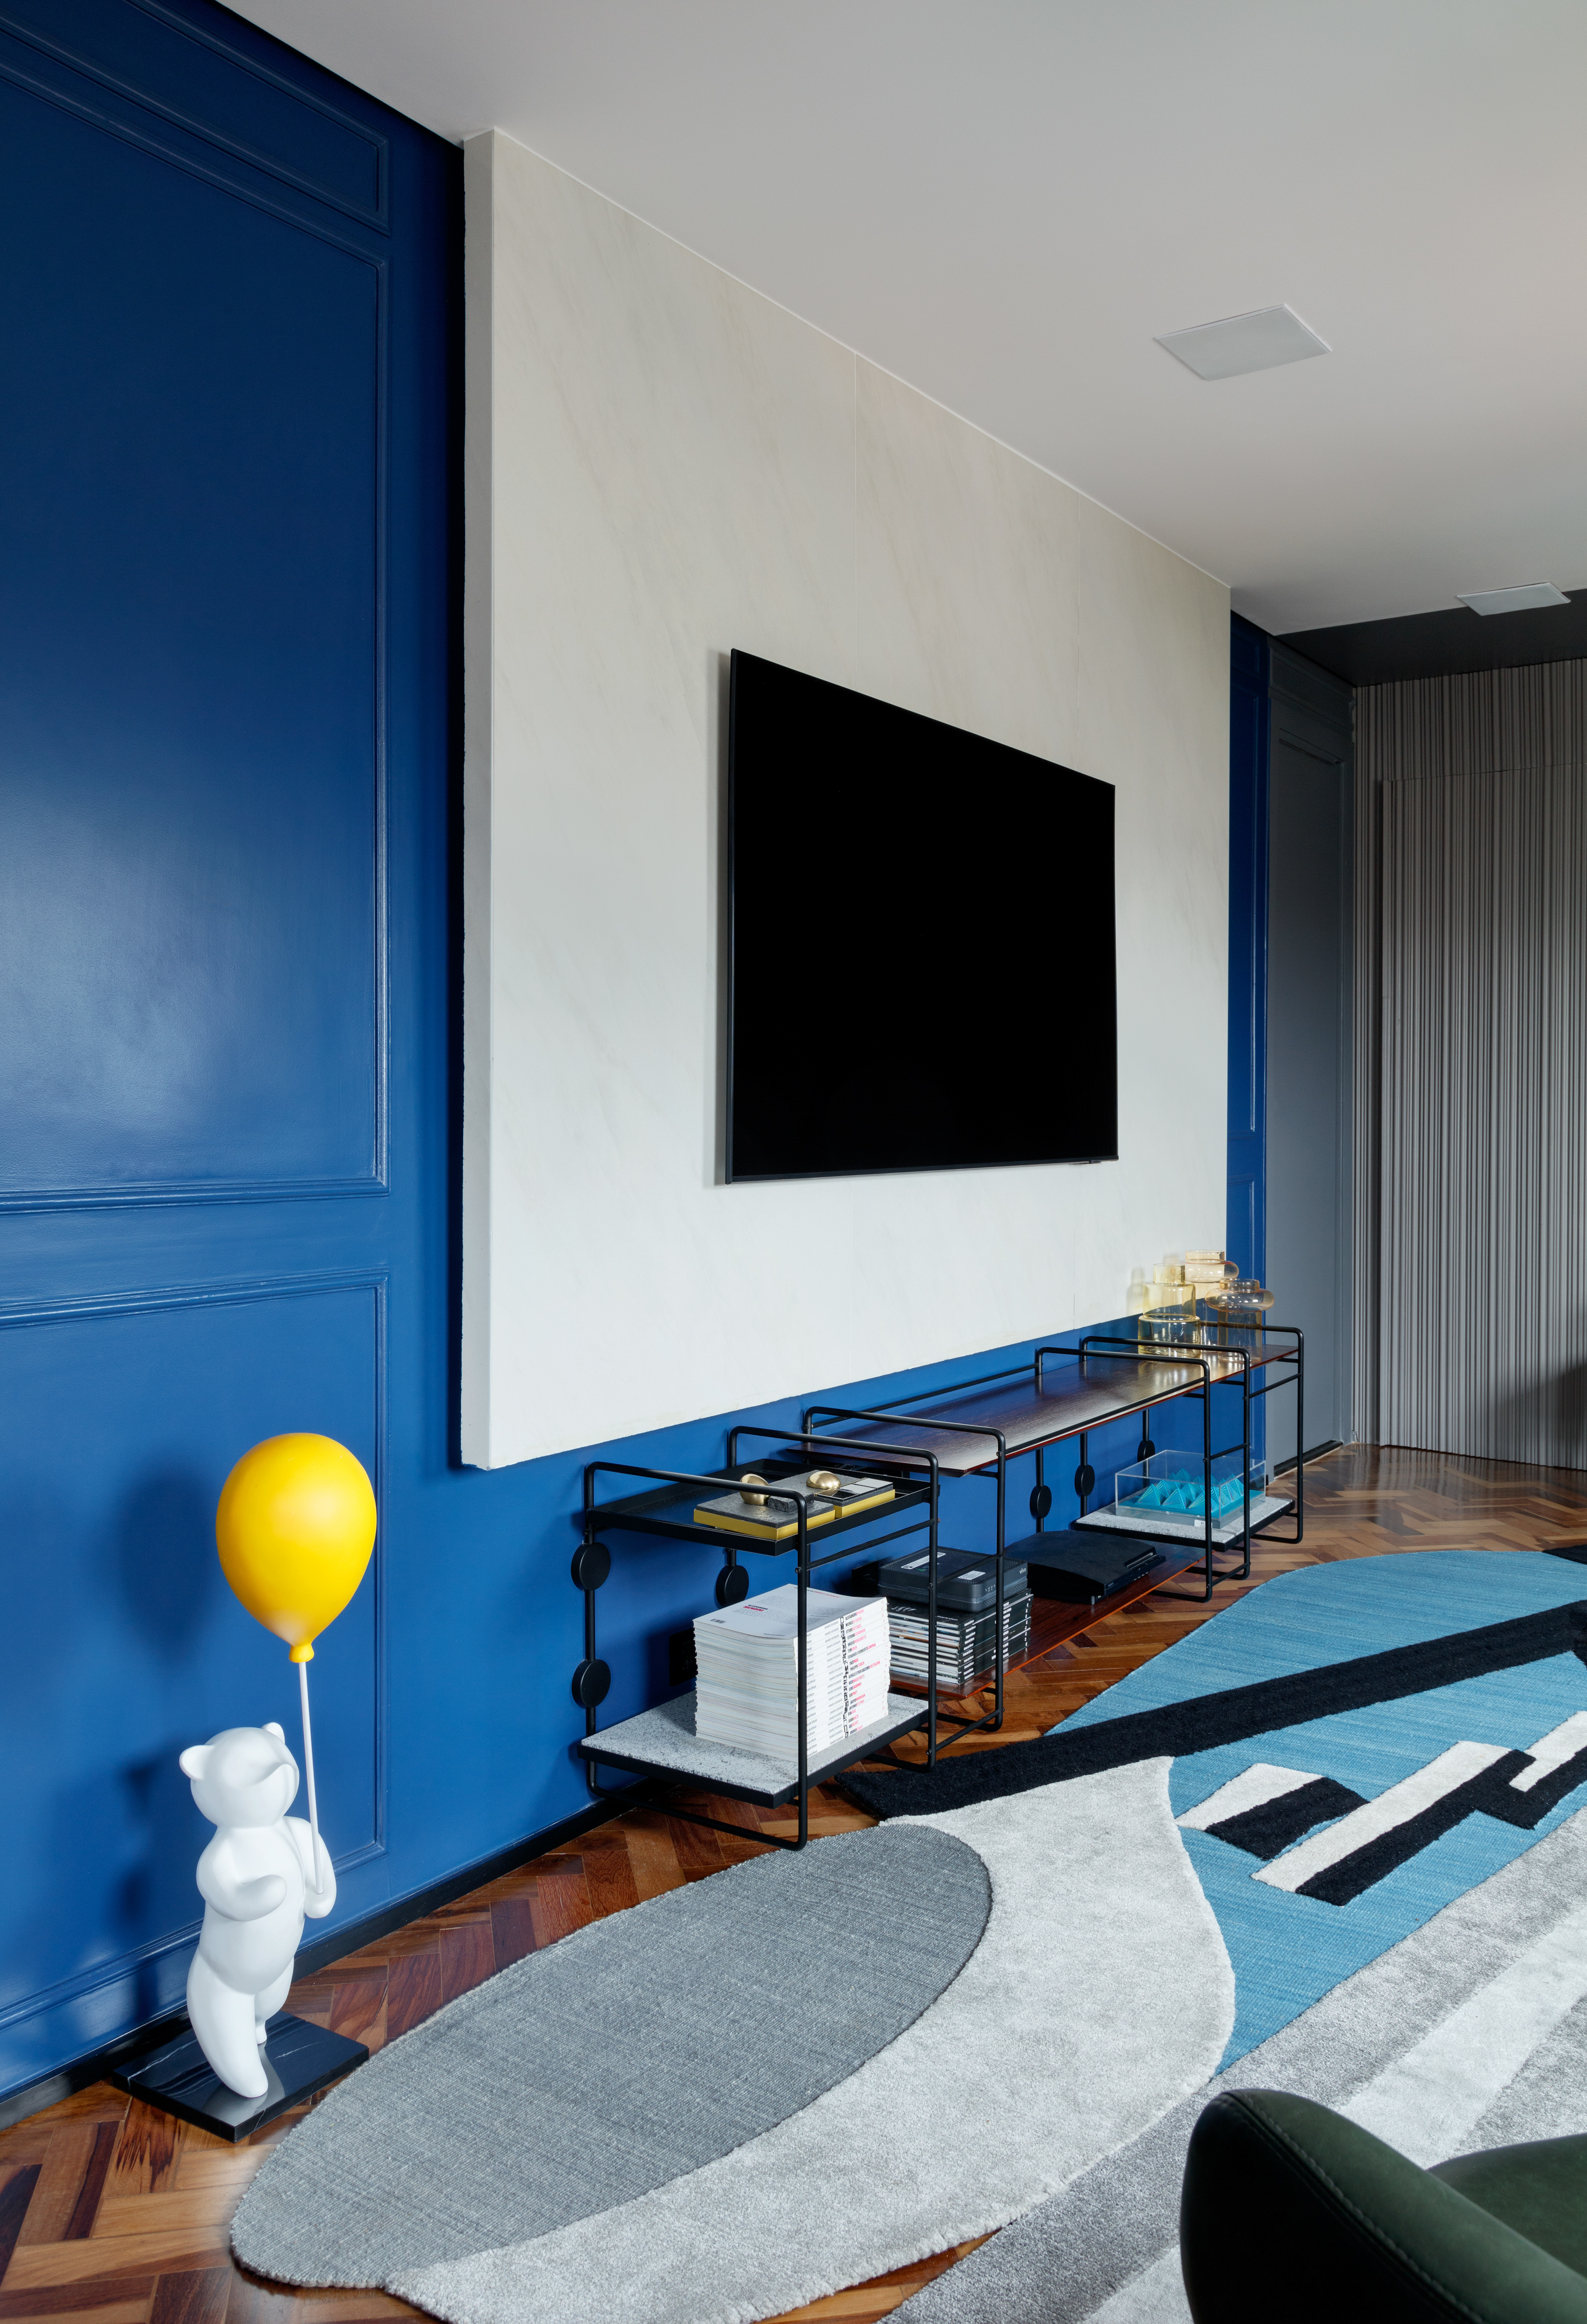 Rústico, retrô e contemporâneo: apê de 72 m² ganha vida com cozinha azul. Projeto de Ricardo Abreu. Na foto, sala com parede azul a painel de porcelanato.